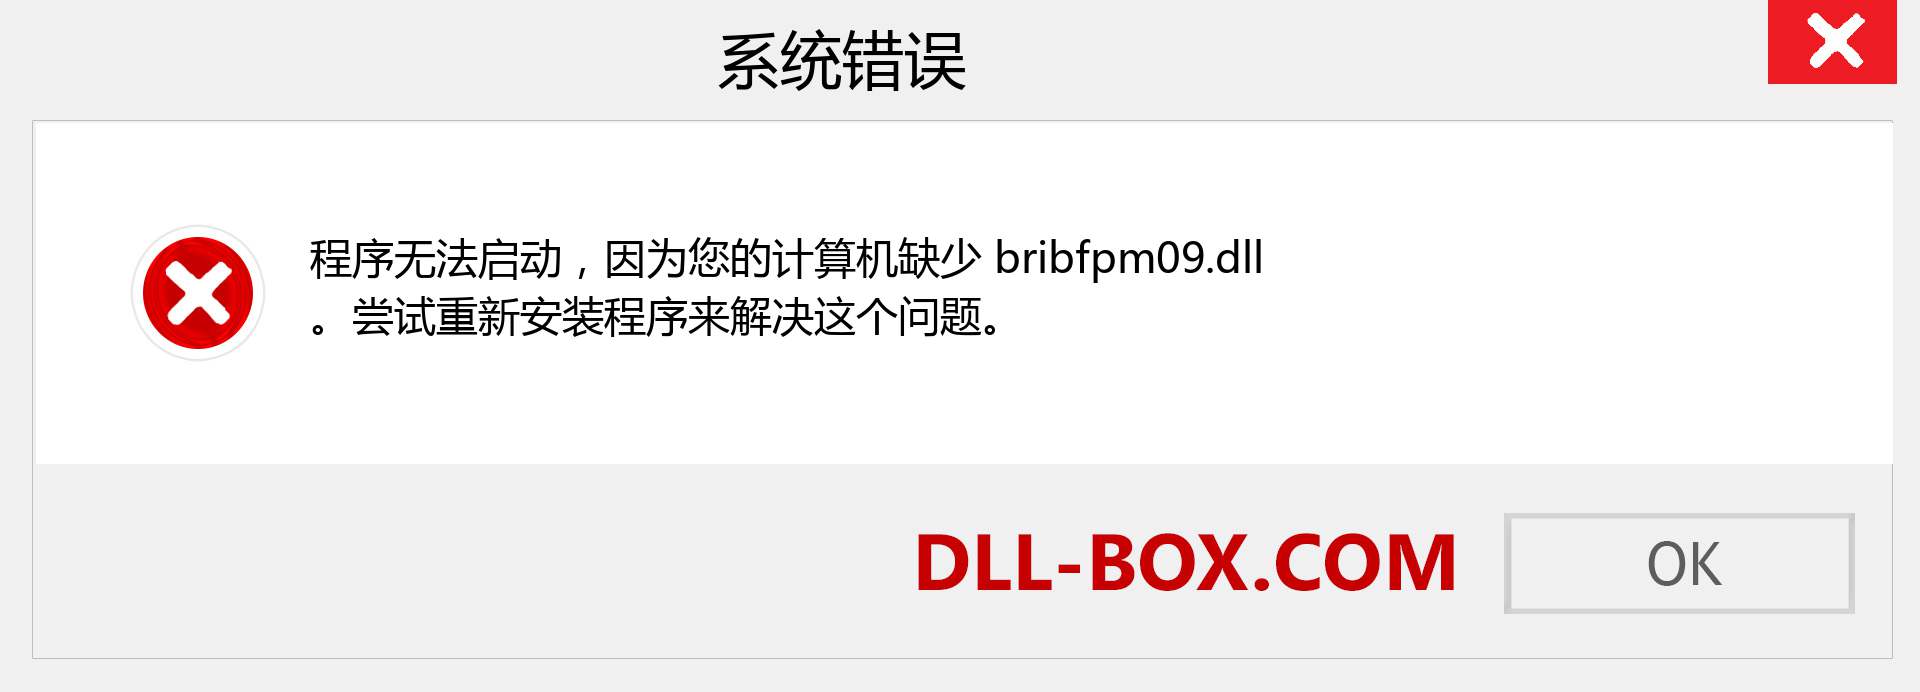 bribfpm09.dll 文件丢失？。 适用于 Windows 7、8、10 的下载 - 修复 Windows、照片、图像上的 bribfpm09 dll 丢失错误